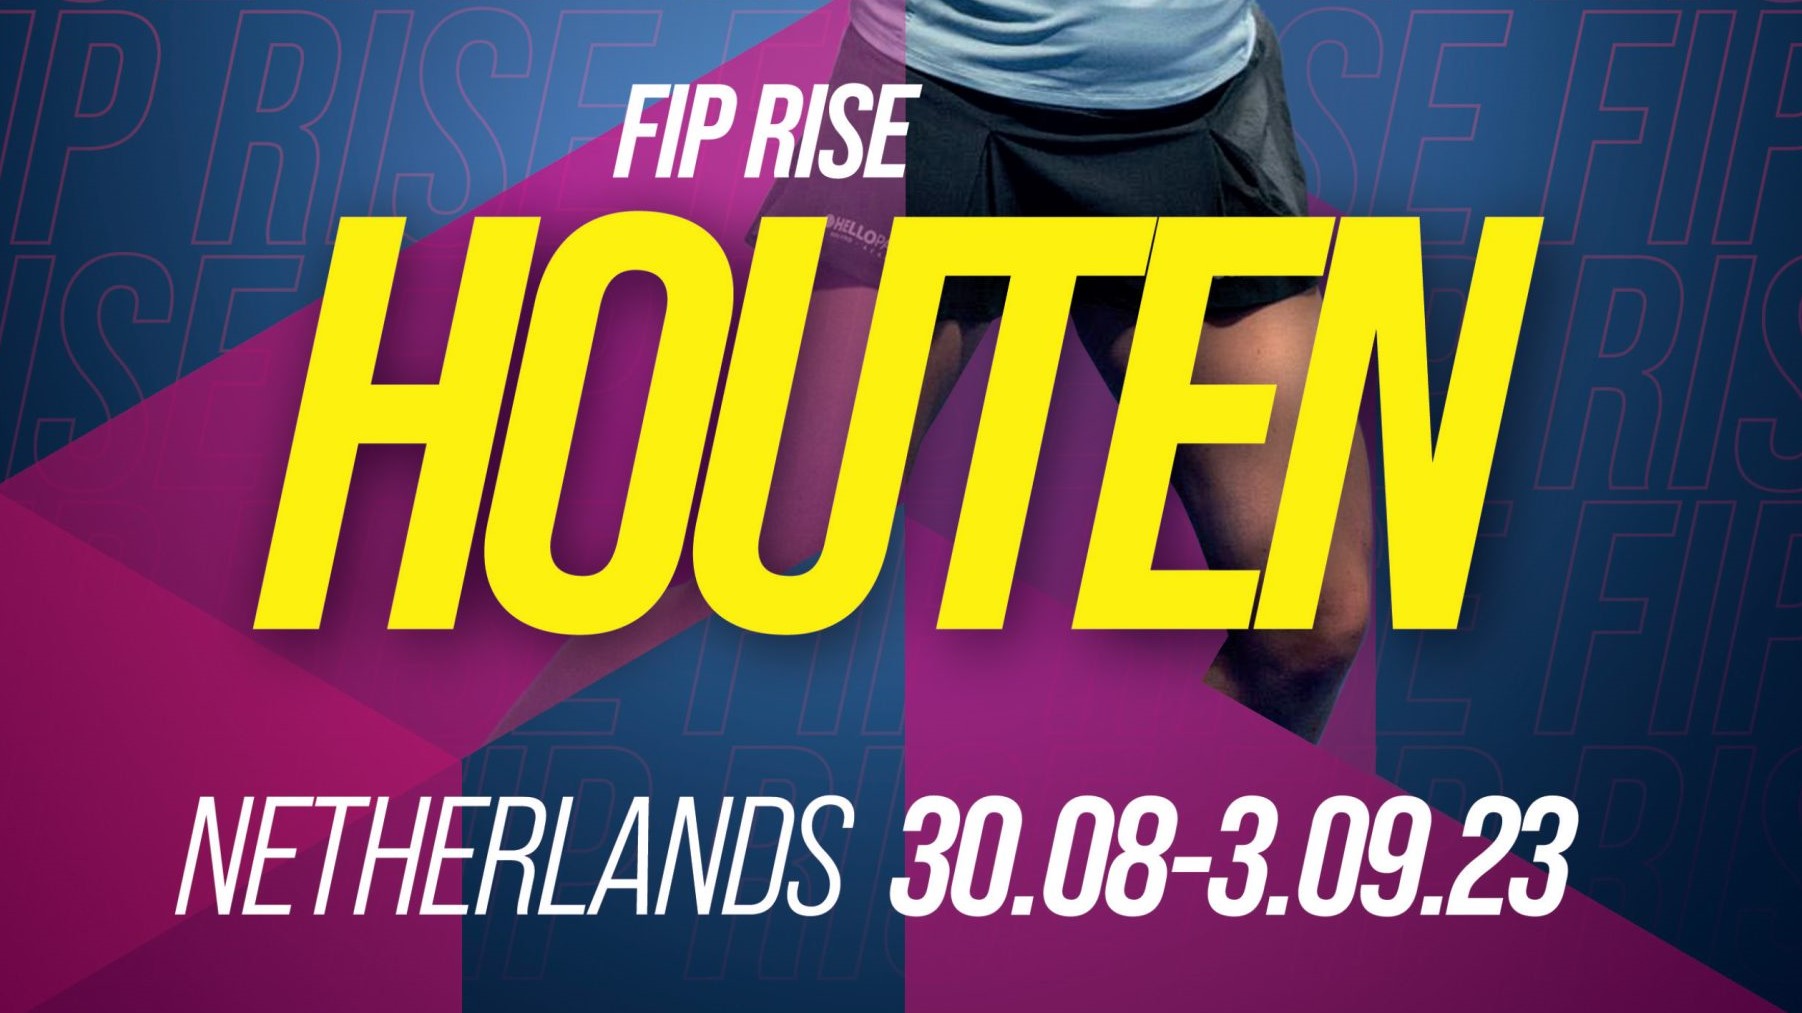 FIP Rise Houten – Tre francesi sulle piste questo venerdì